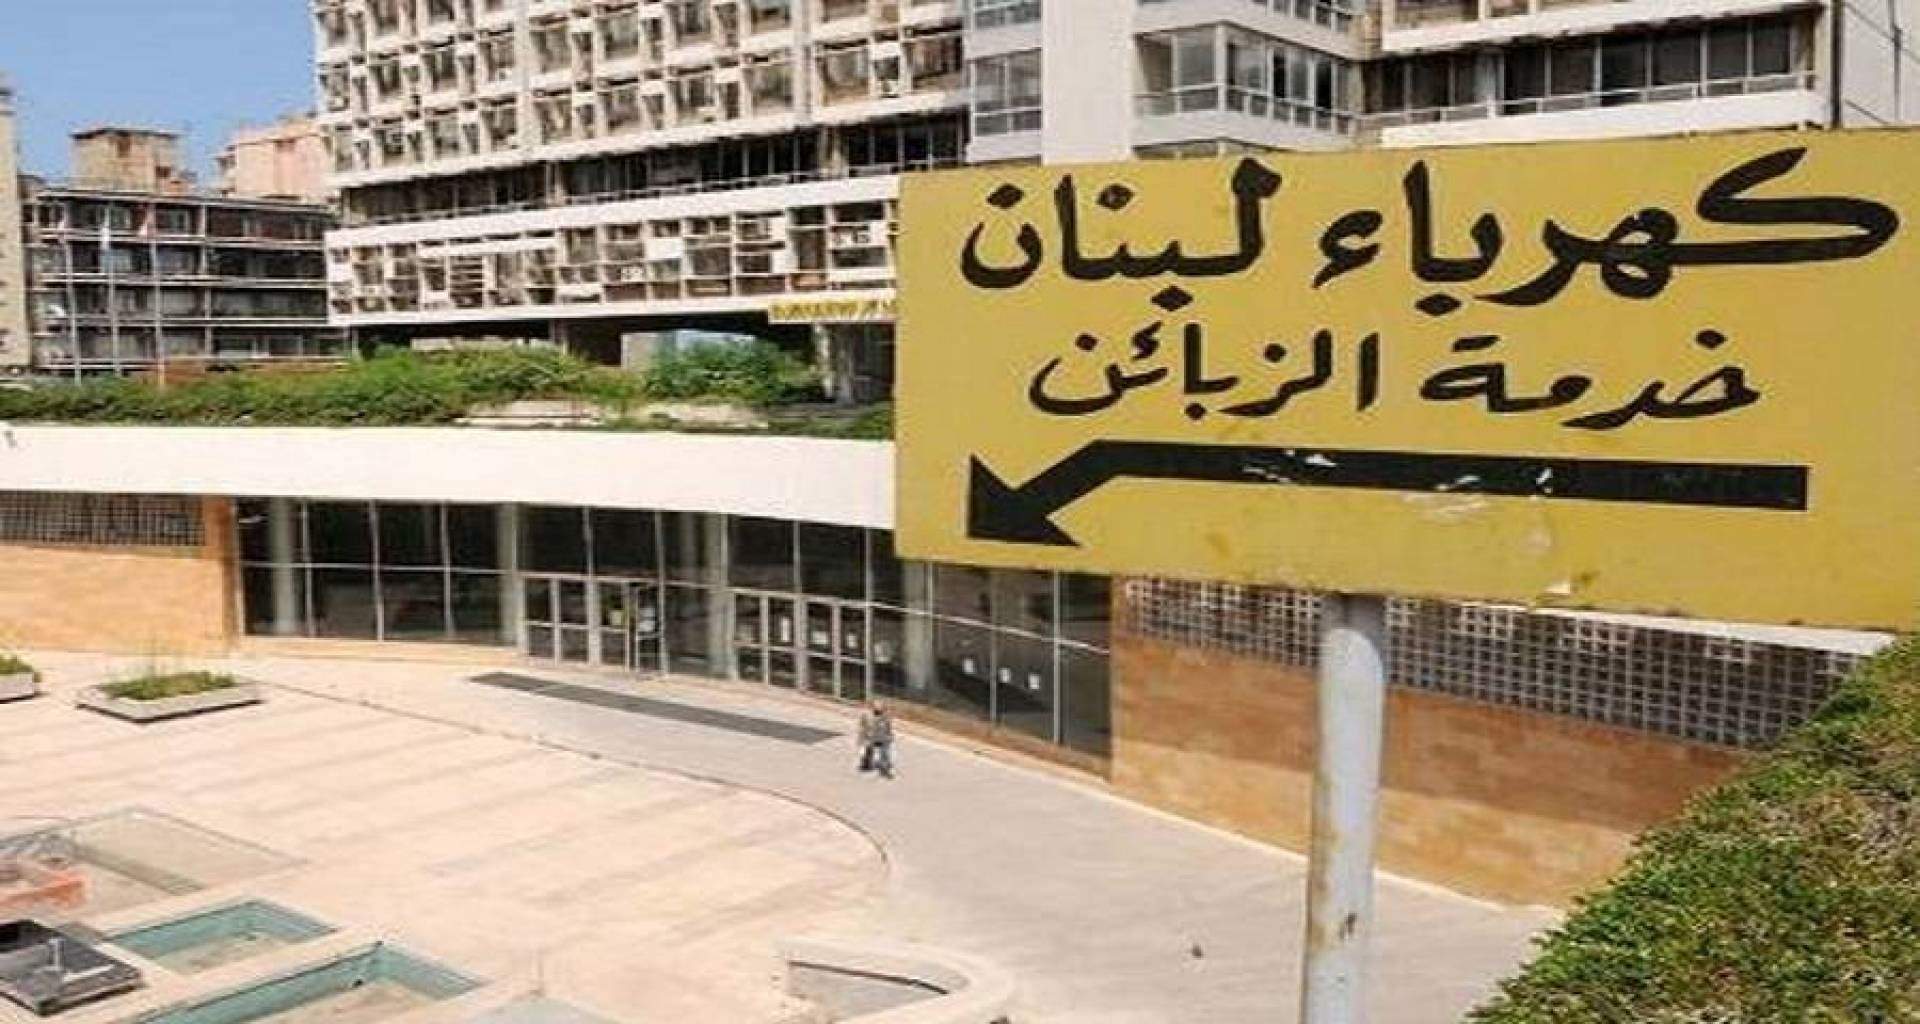 "كهرباء لبنان": تخفيض رسوم الاشتراك بالتيار مستمر حتى 28 الحالي